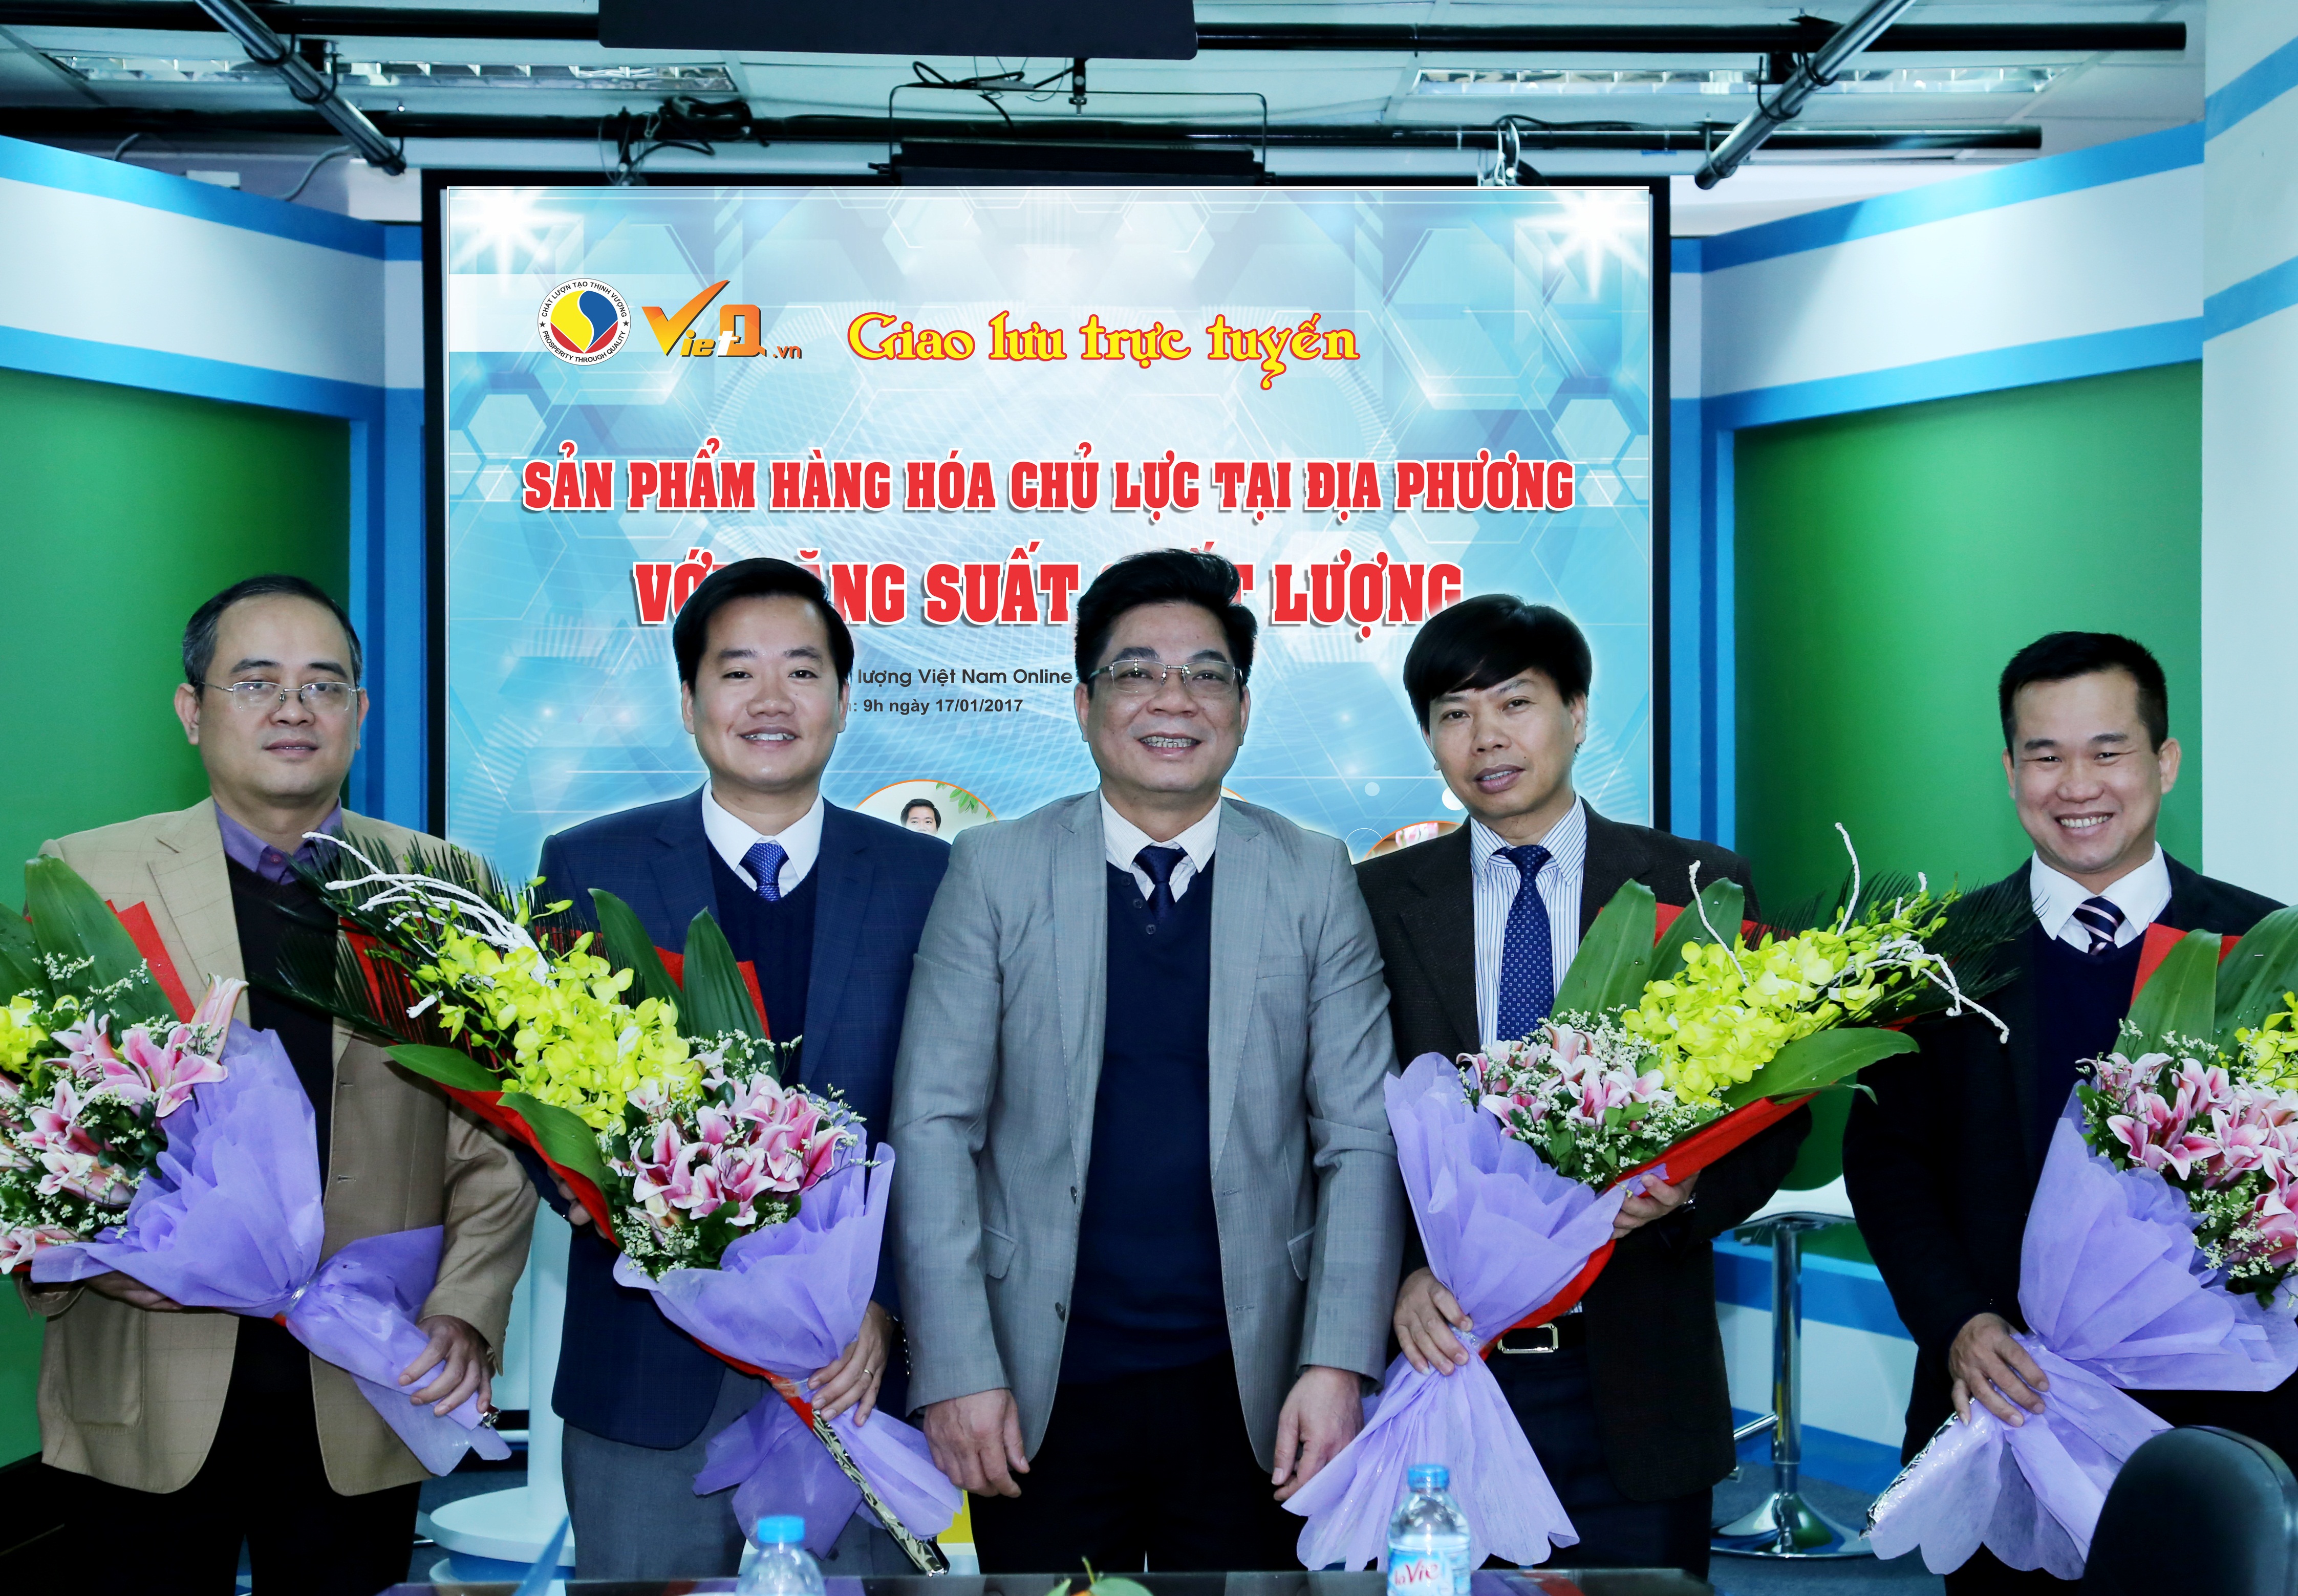 Ông Trần Văn Dư - Tổng biên tập Chất lượng Việt Nam online (VietQ.vn) tặng hoa cho các khách mời tham gia chương trình giao lưu trực tuyến.